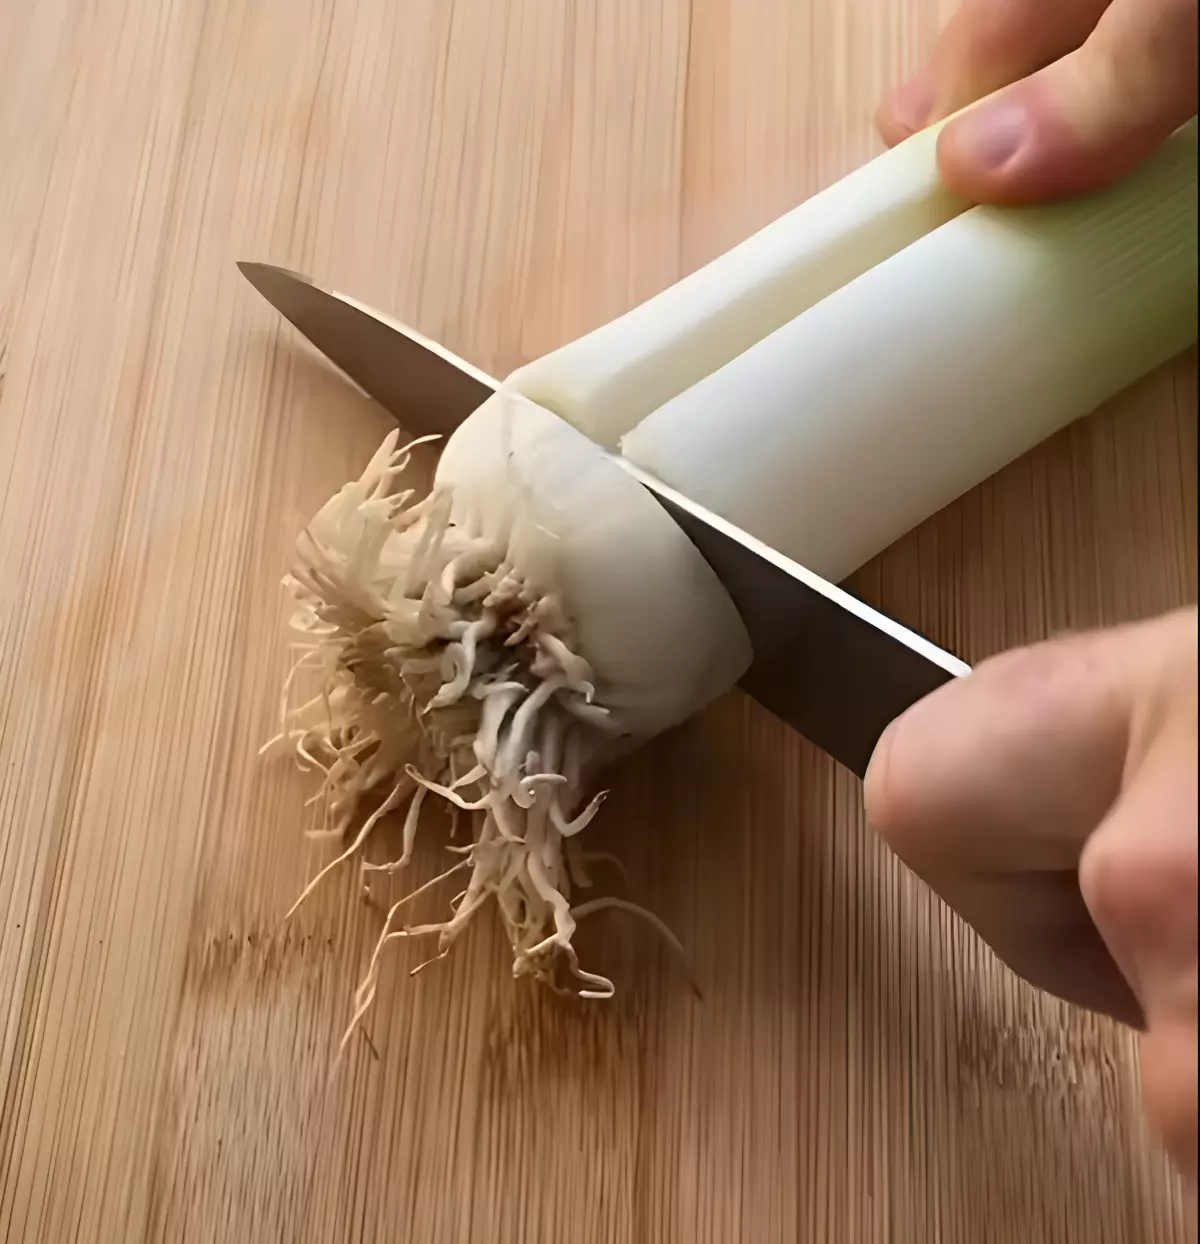 base de poireau avec un couteau enfonce sur une planche en bois